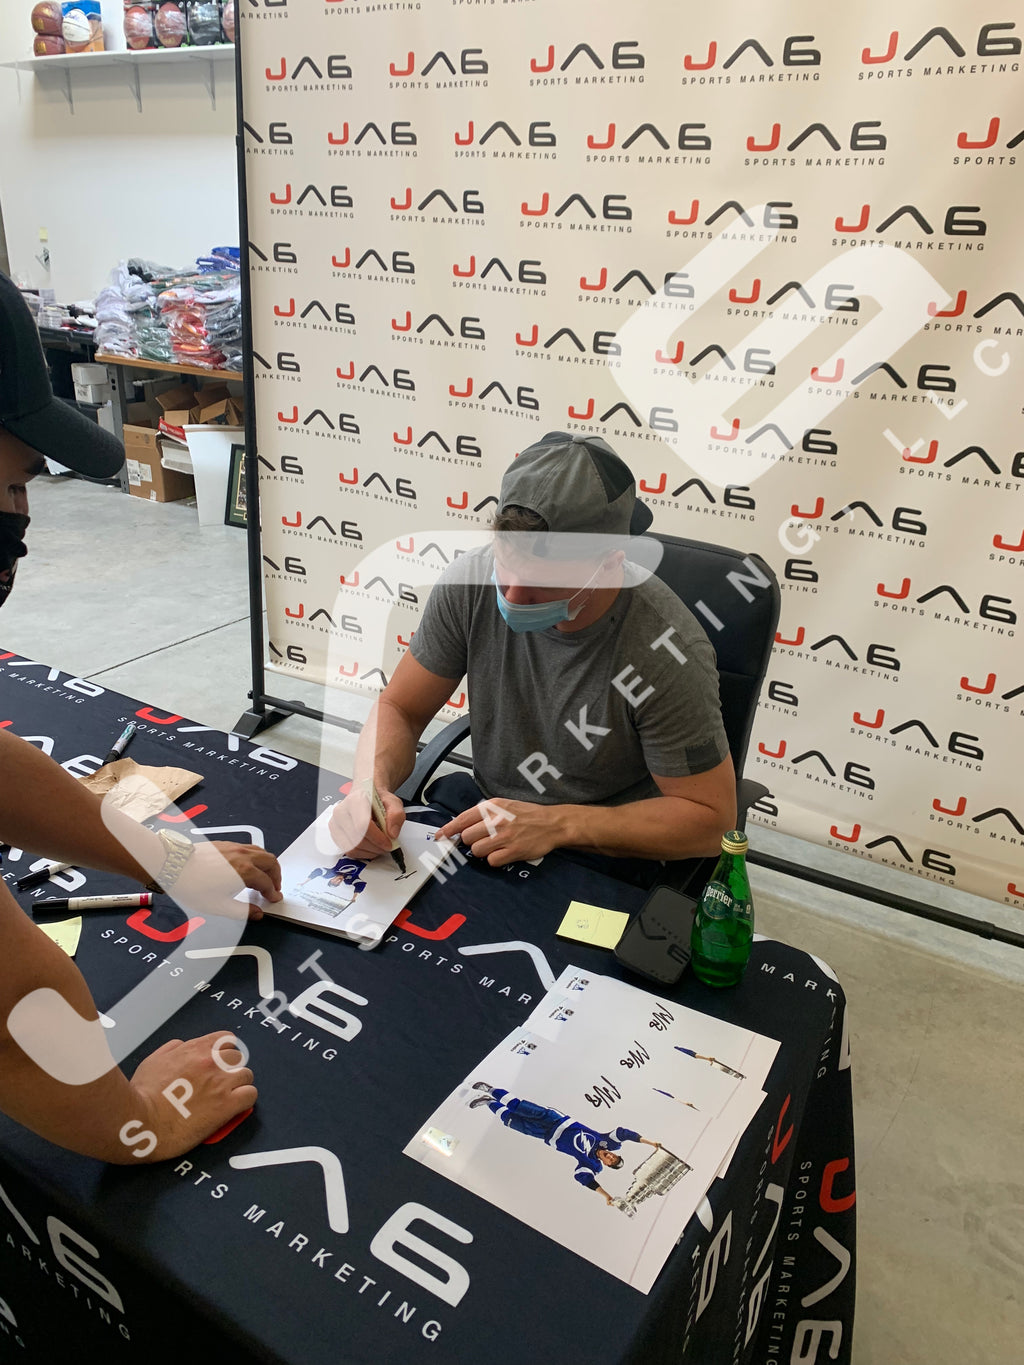 Ondrej Palat autographed signed 8x10 photo NHL Tampa Bay Lightning JSA Witness